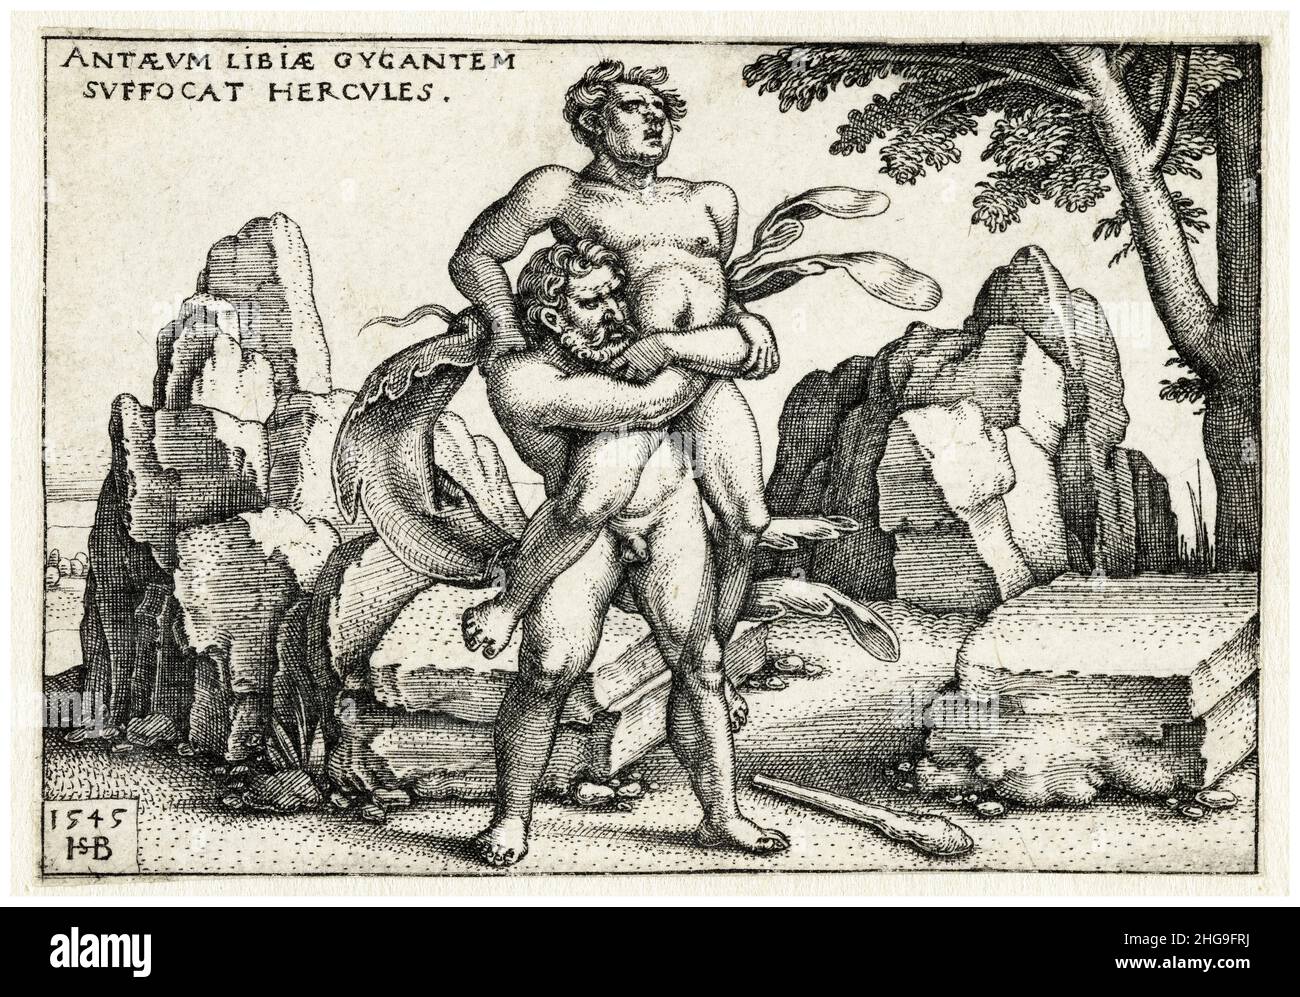 Ercole wrestles con Antaeus, incisione di Sebald Beham, 1545 Foto Stock